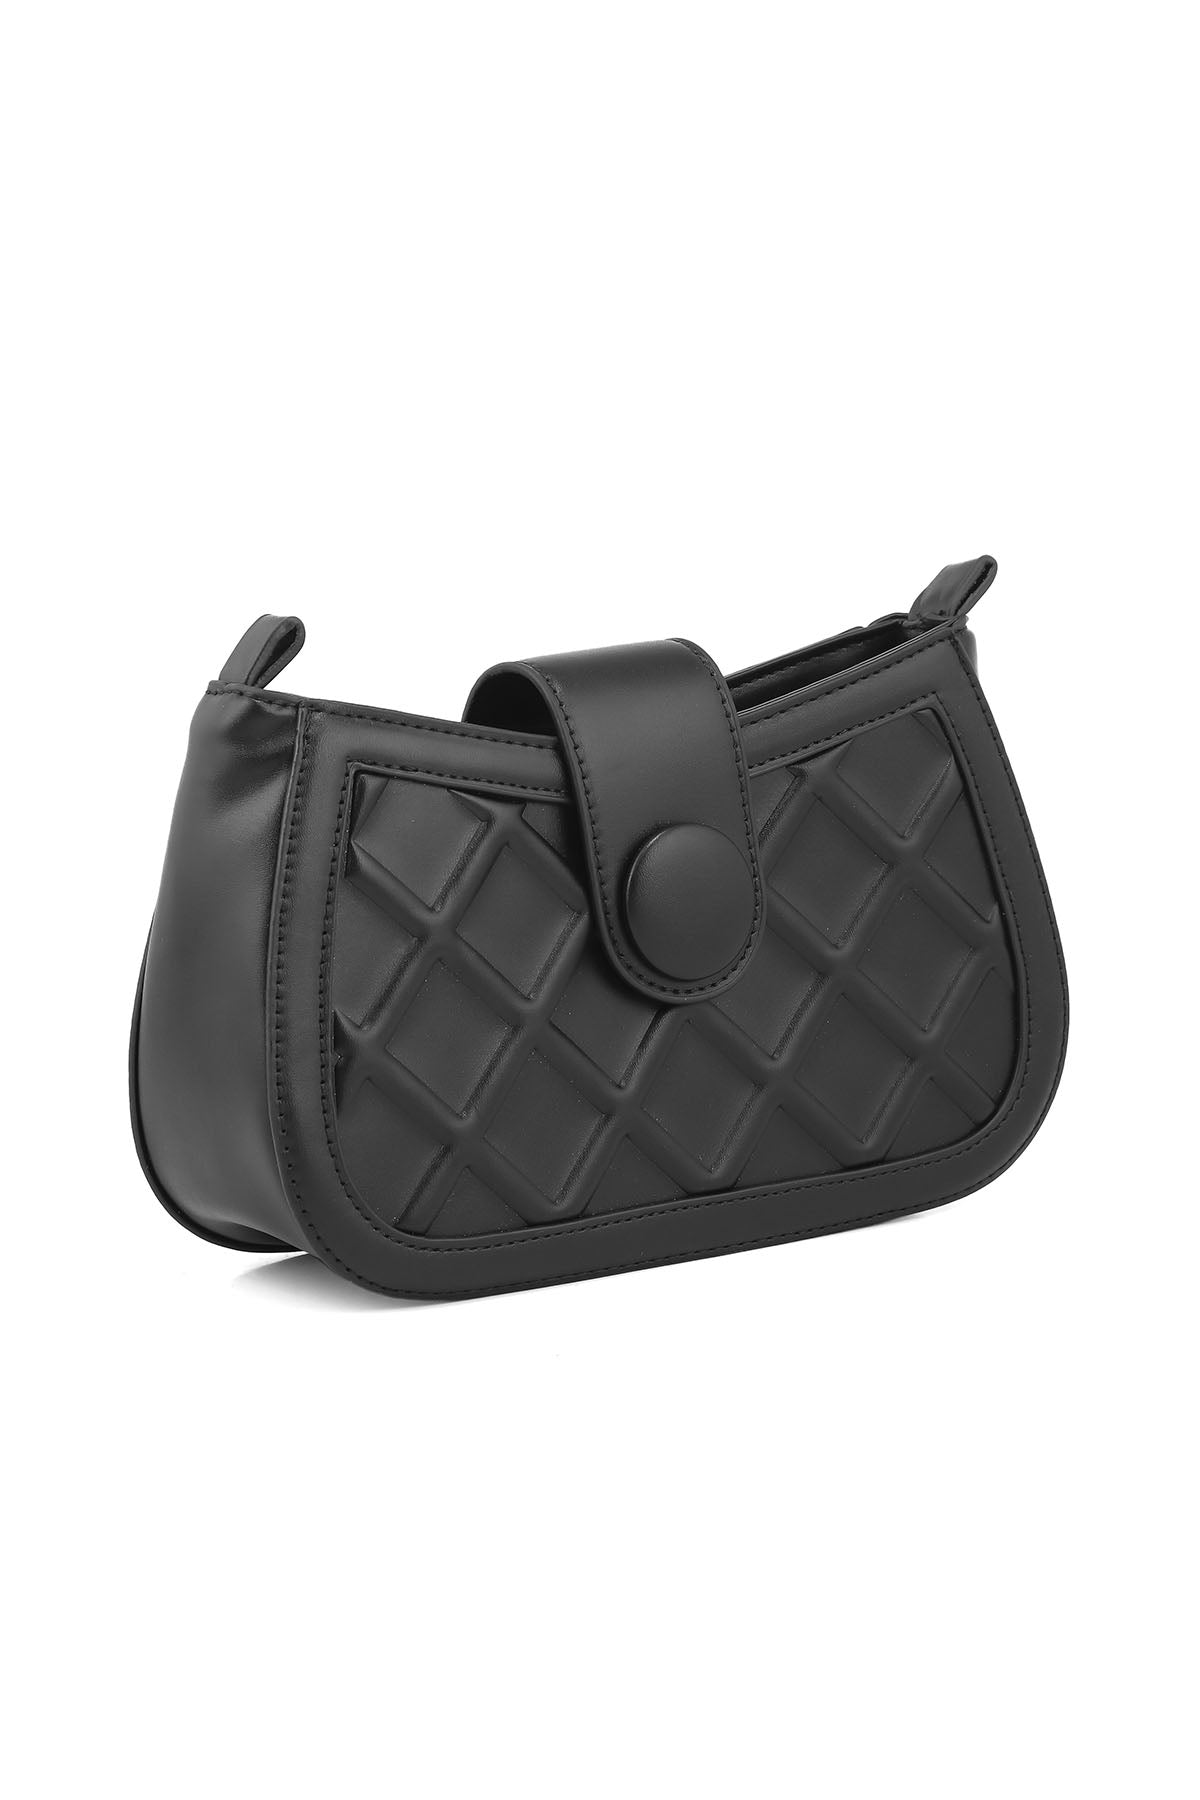 Cross Shoulder Bags B14958-Black